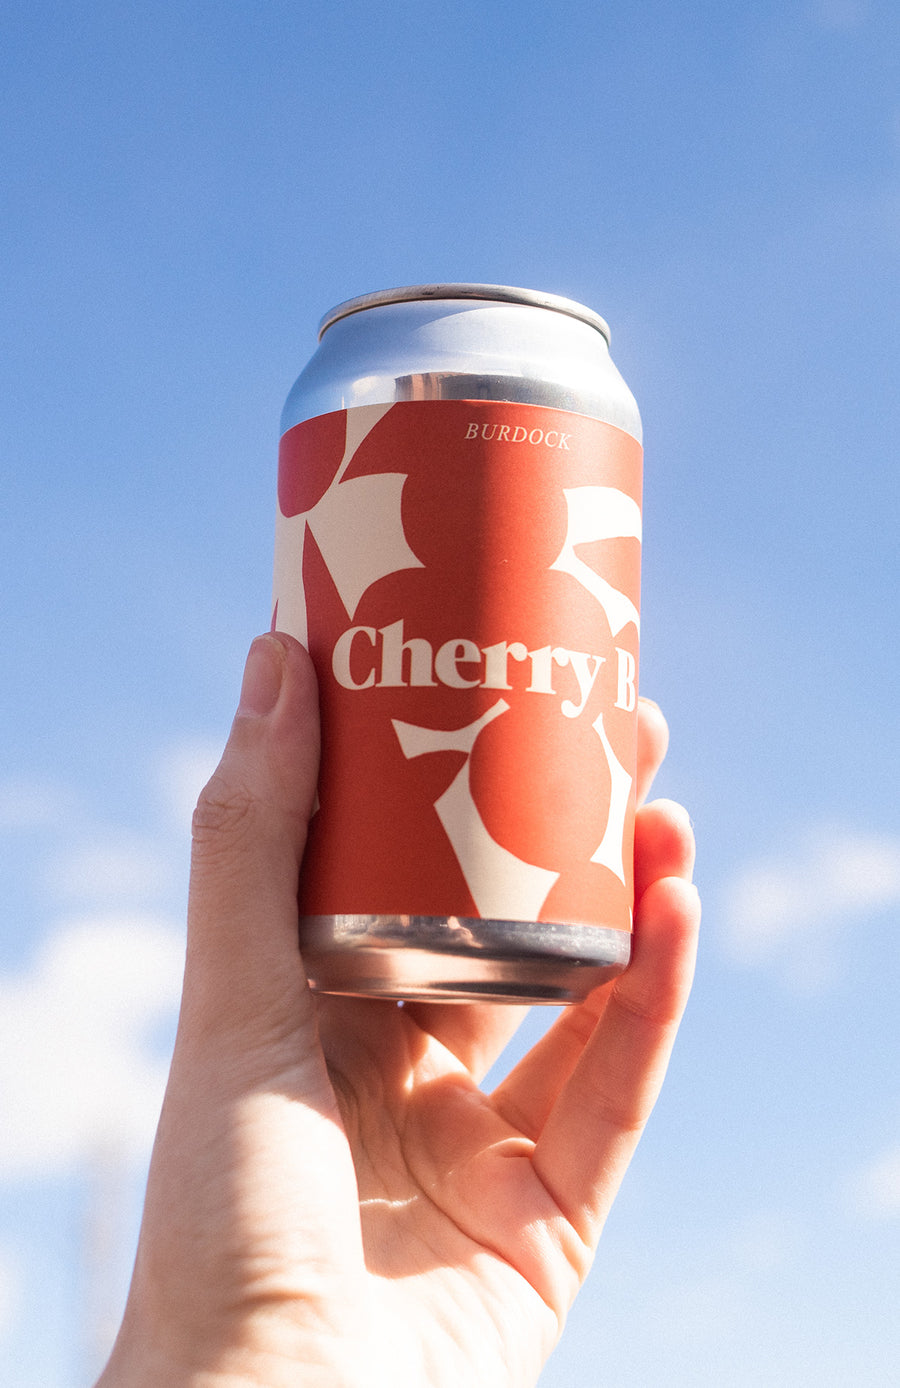 Cherry B (5.2%)